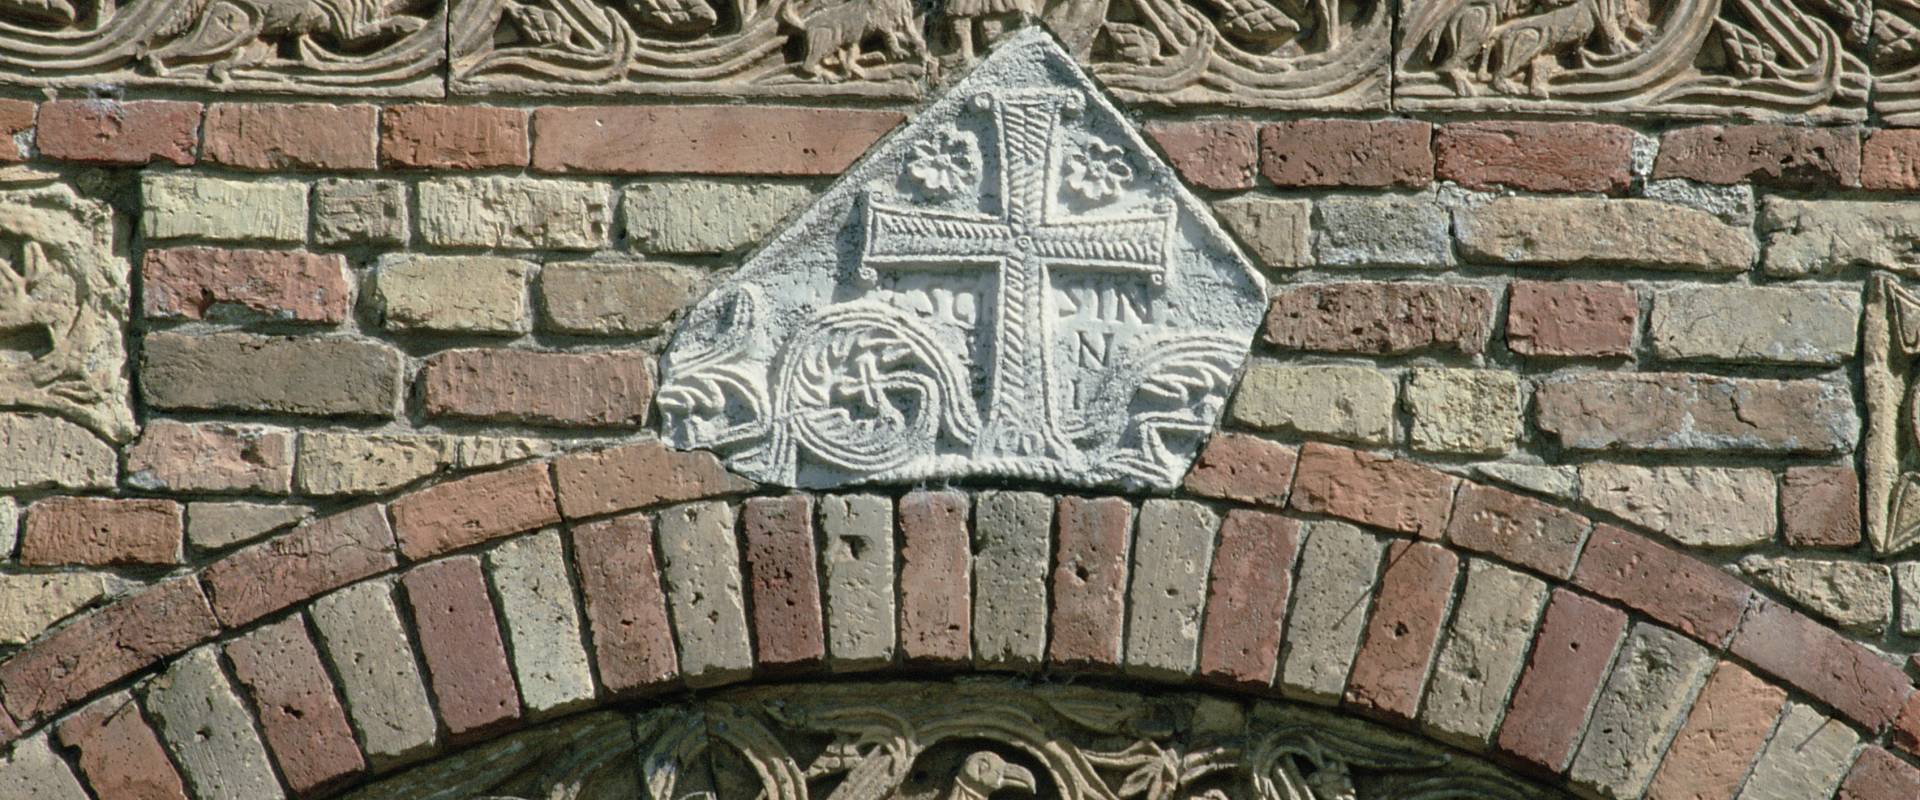 Abbazia di Pomposa. Decorazioni marmoree della facciata foto di Samaritani